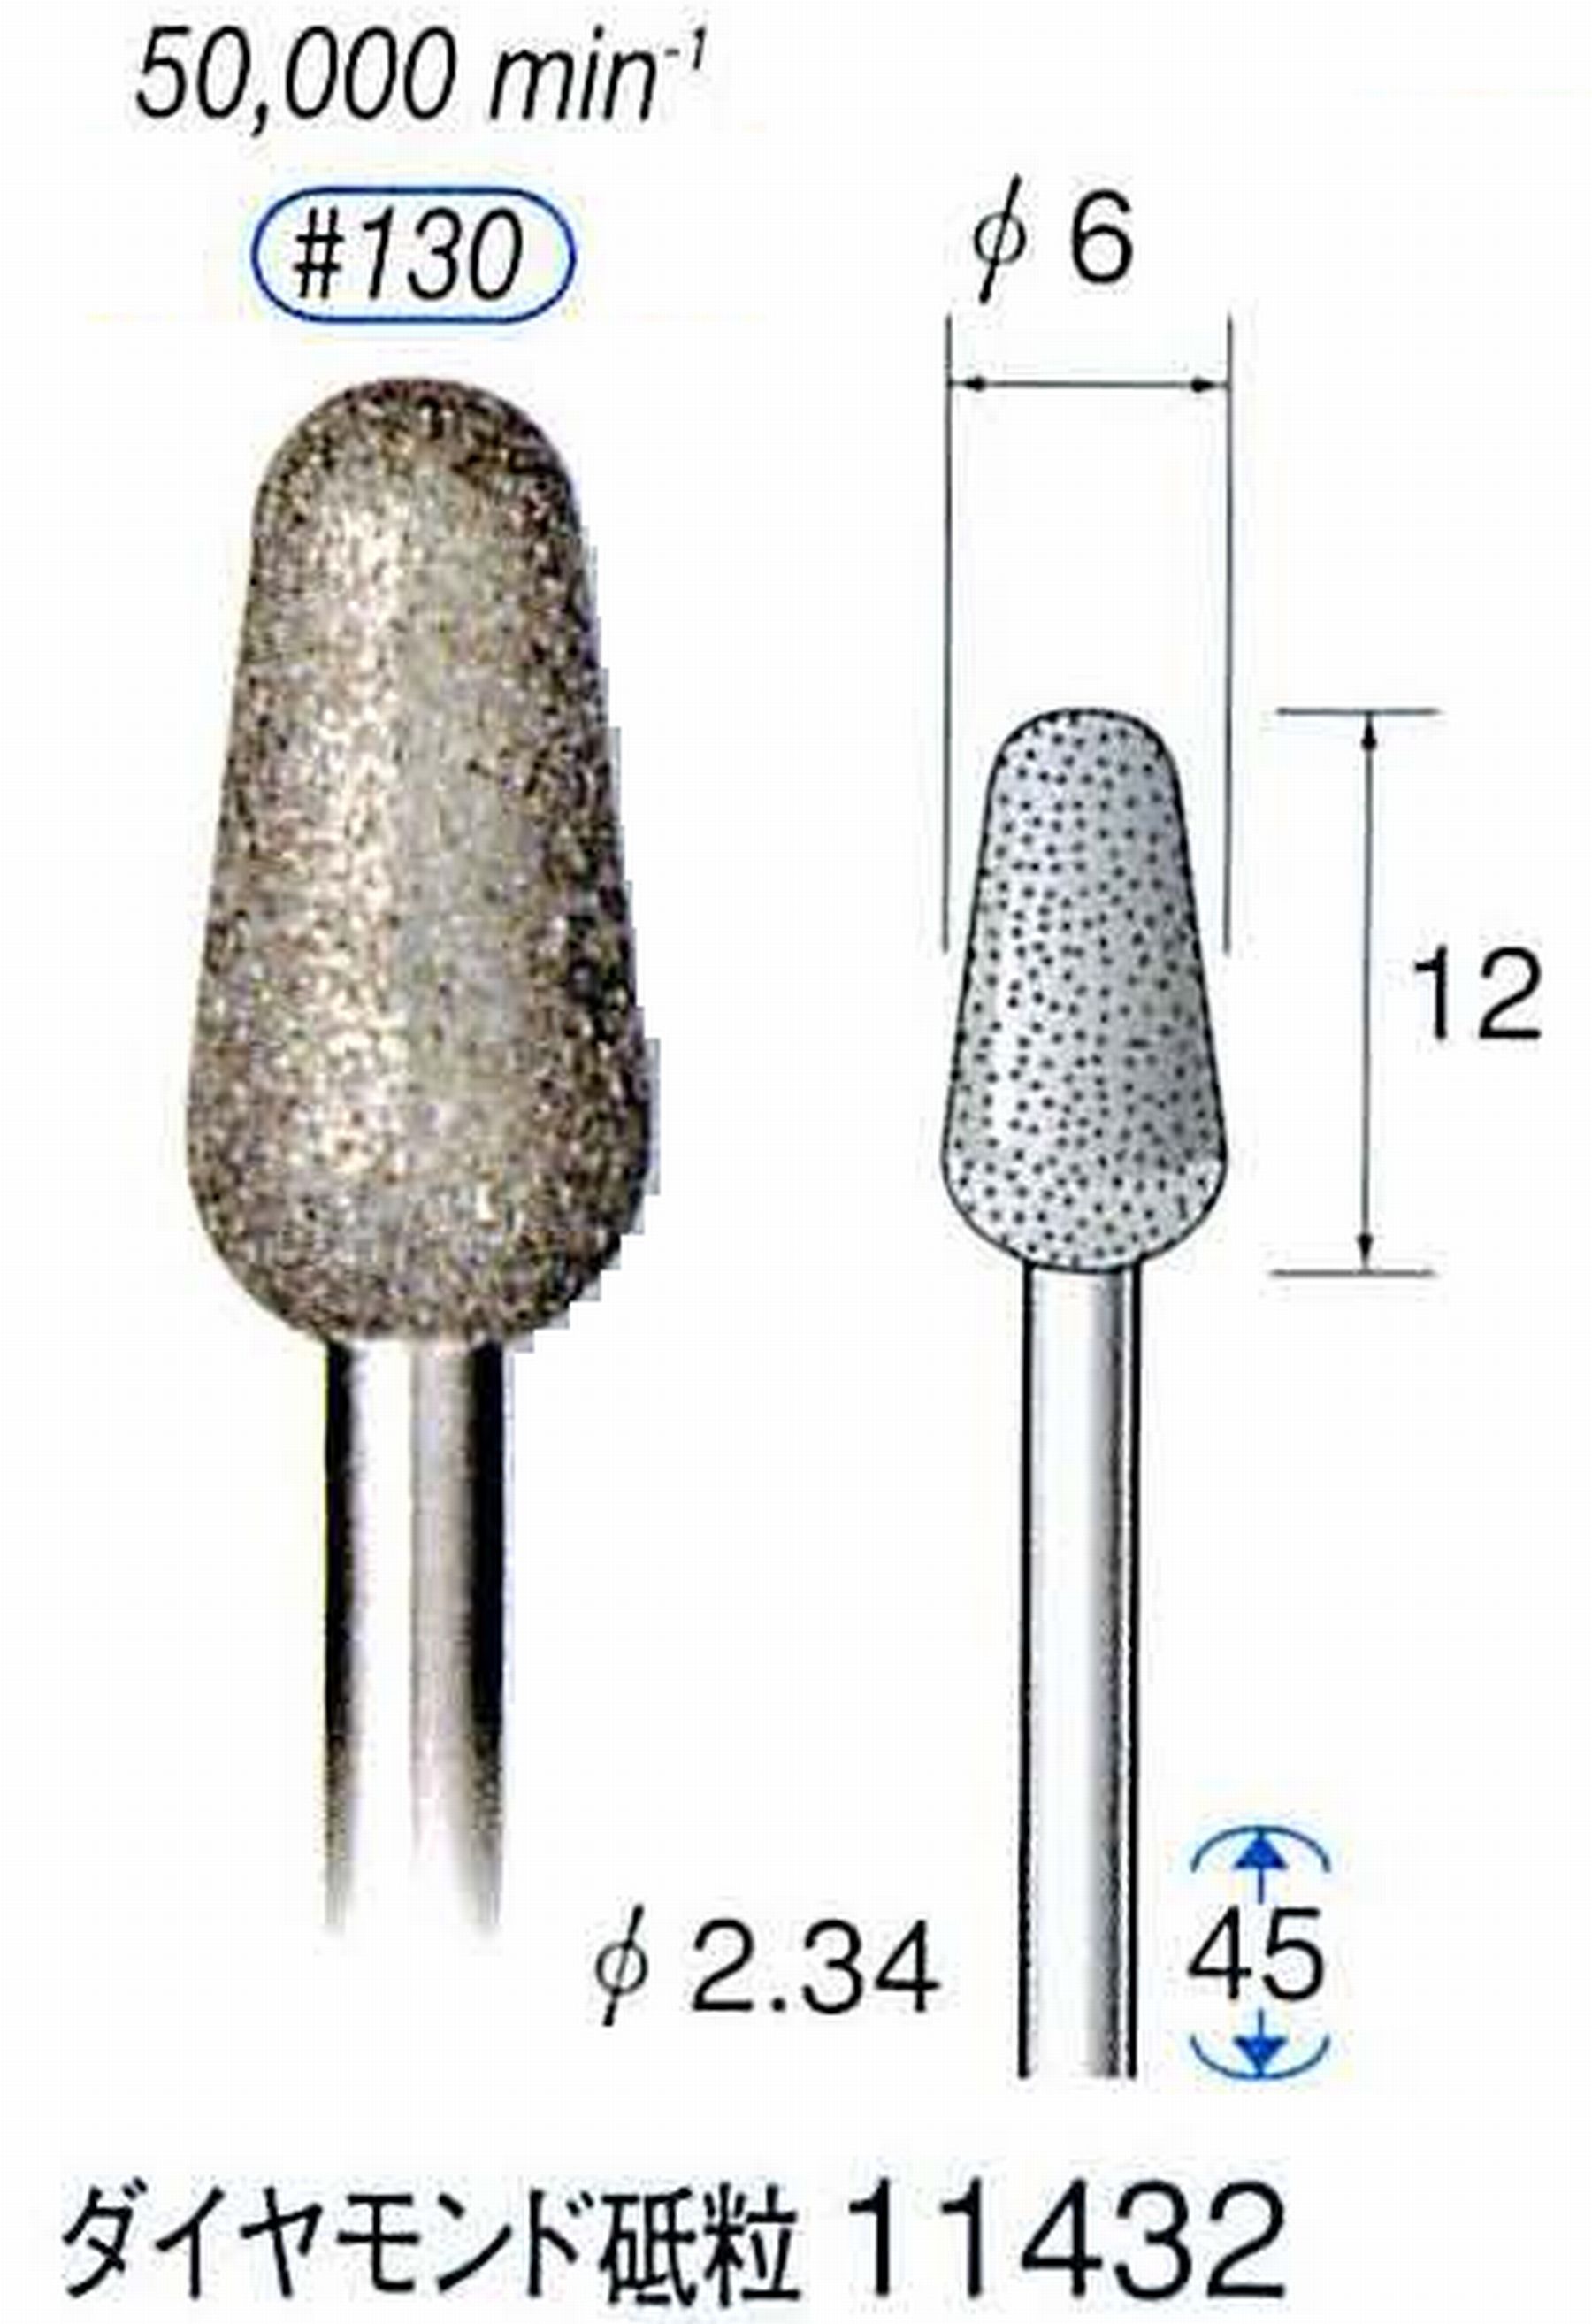 ナカニシ/NAKANISHI 電着ダイヤモンドバー ダイヤモンド砥粒 軸径(シャンク)φ2.34mm 11432